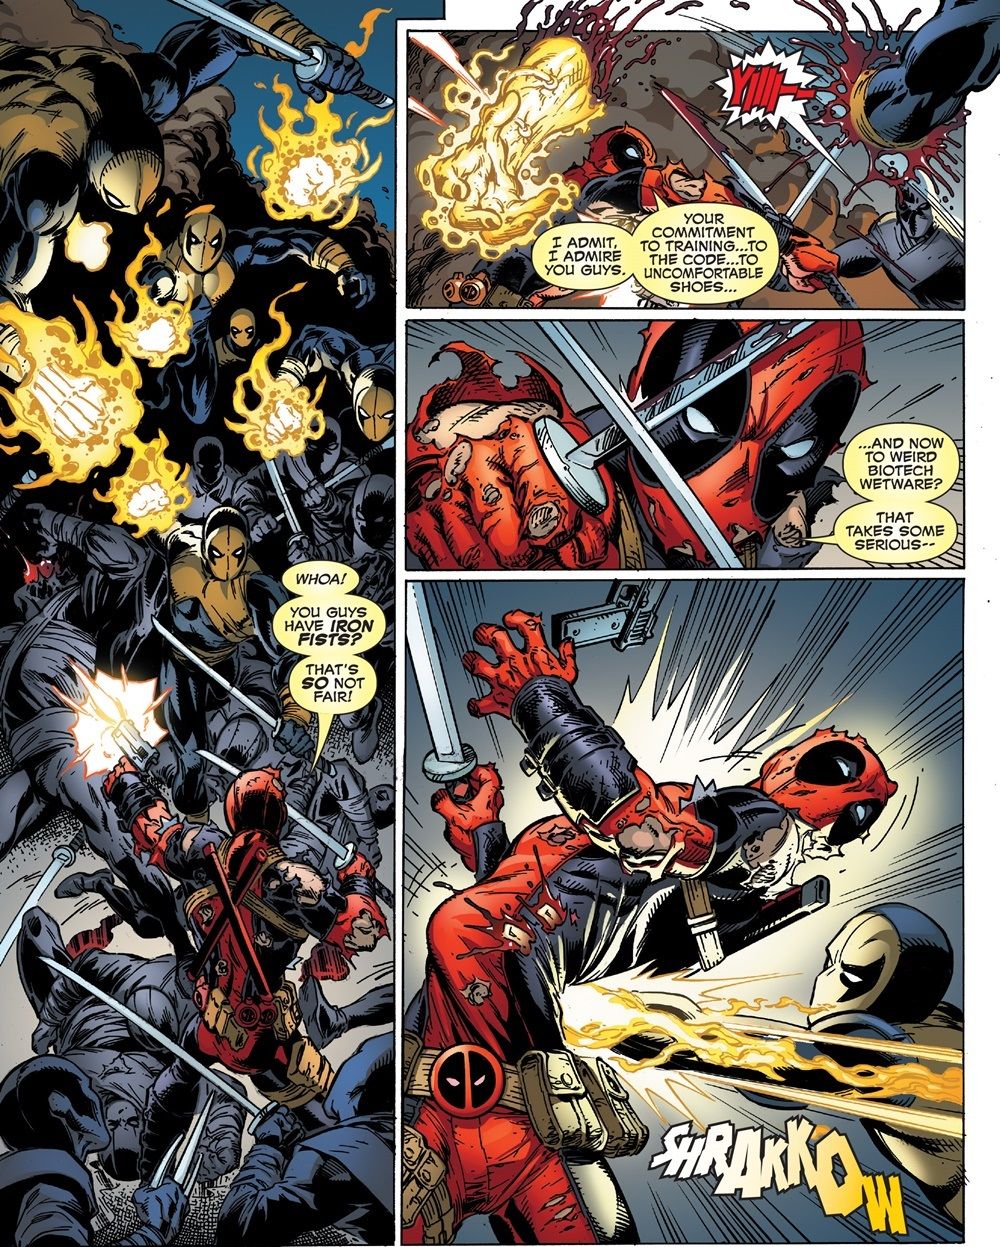 Deadpool fights Iron Fist clan